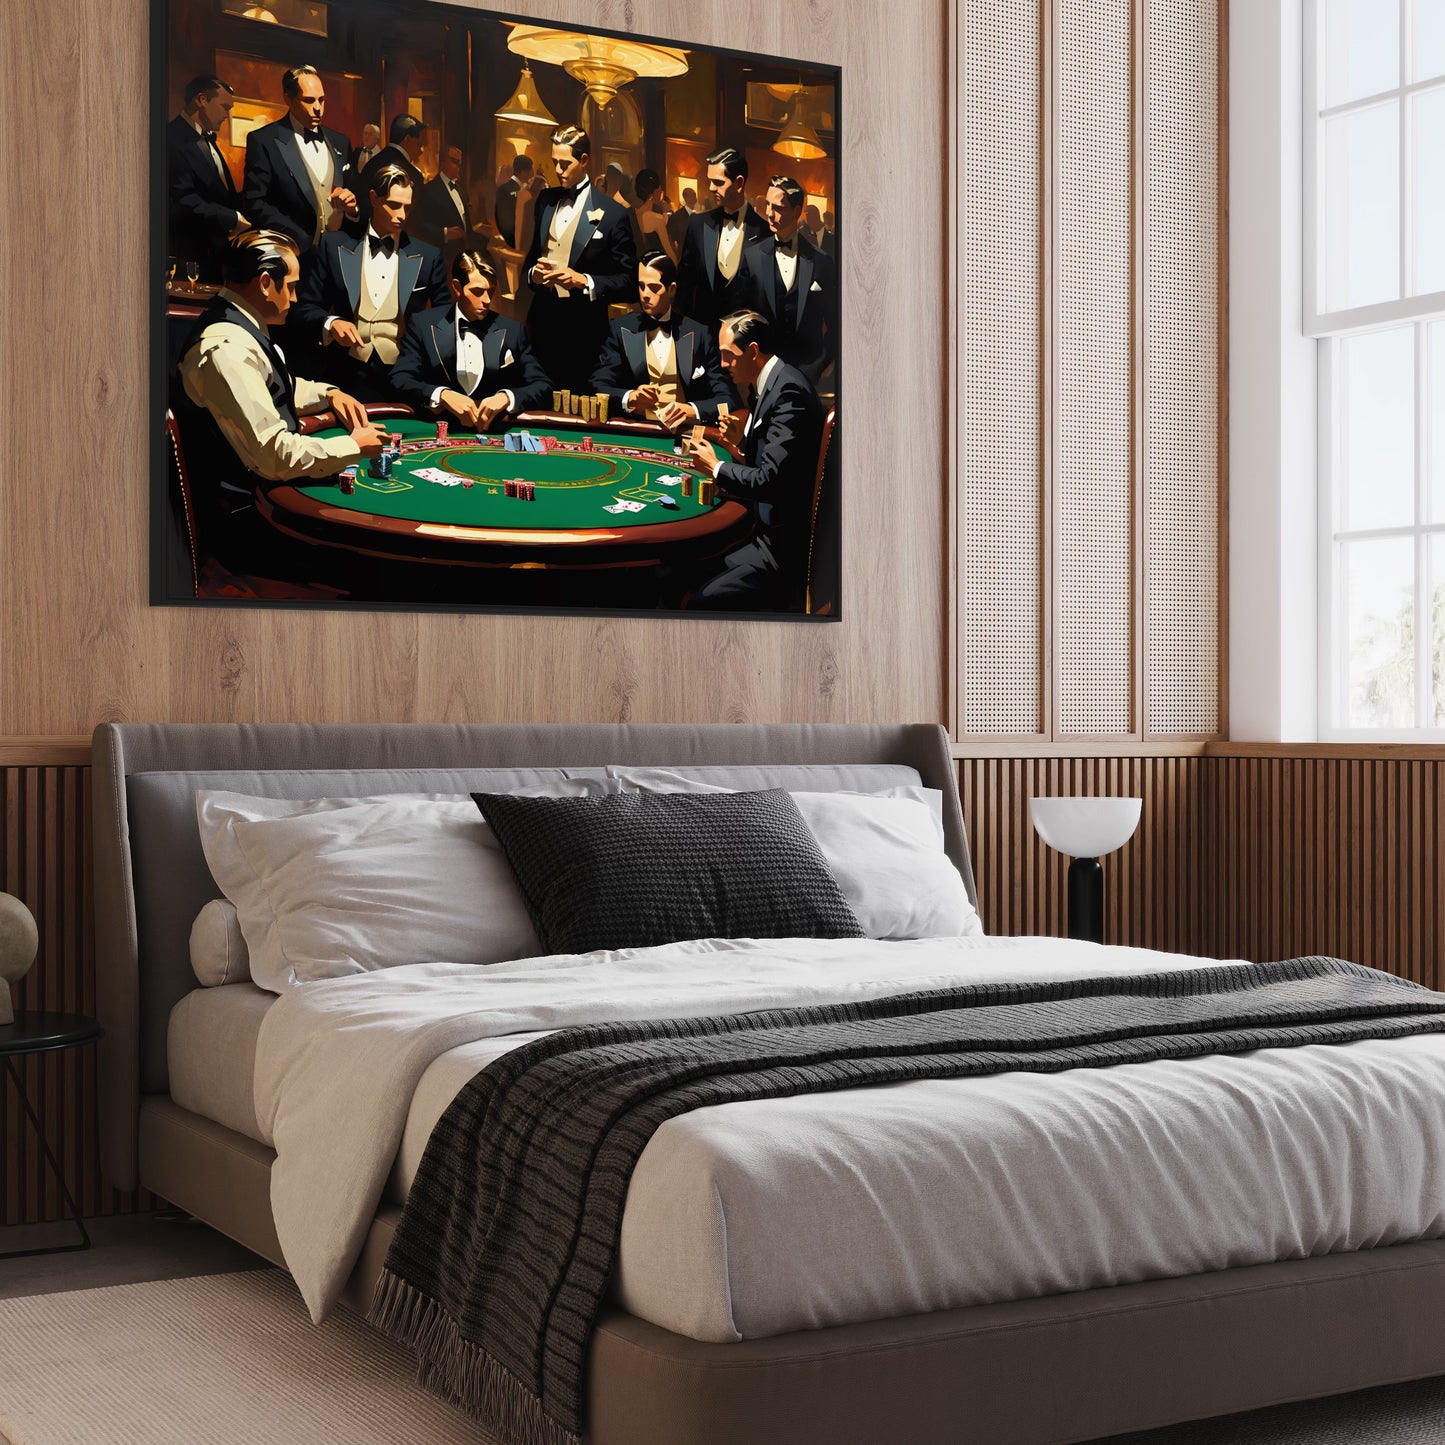 The Poker Room